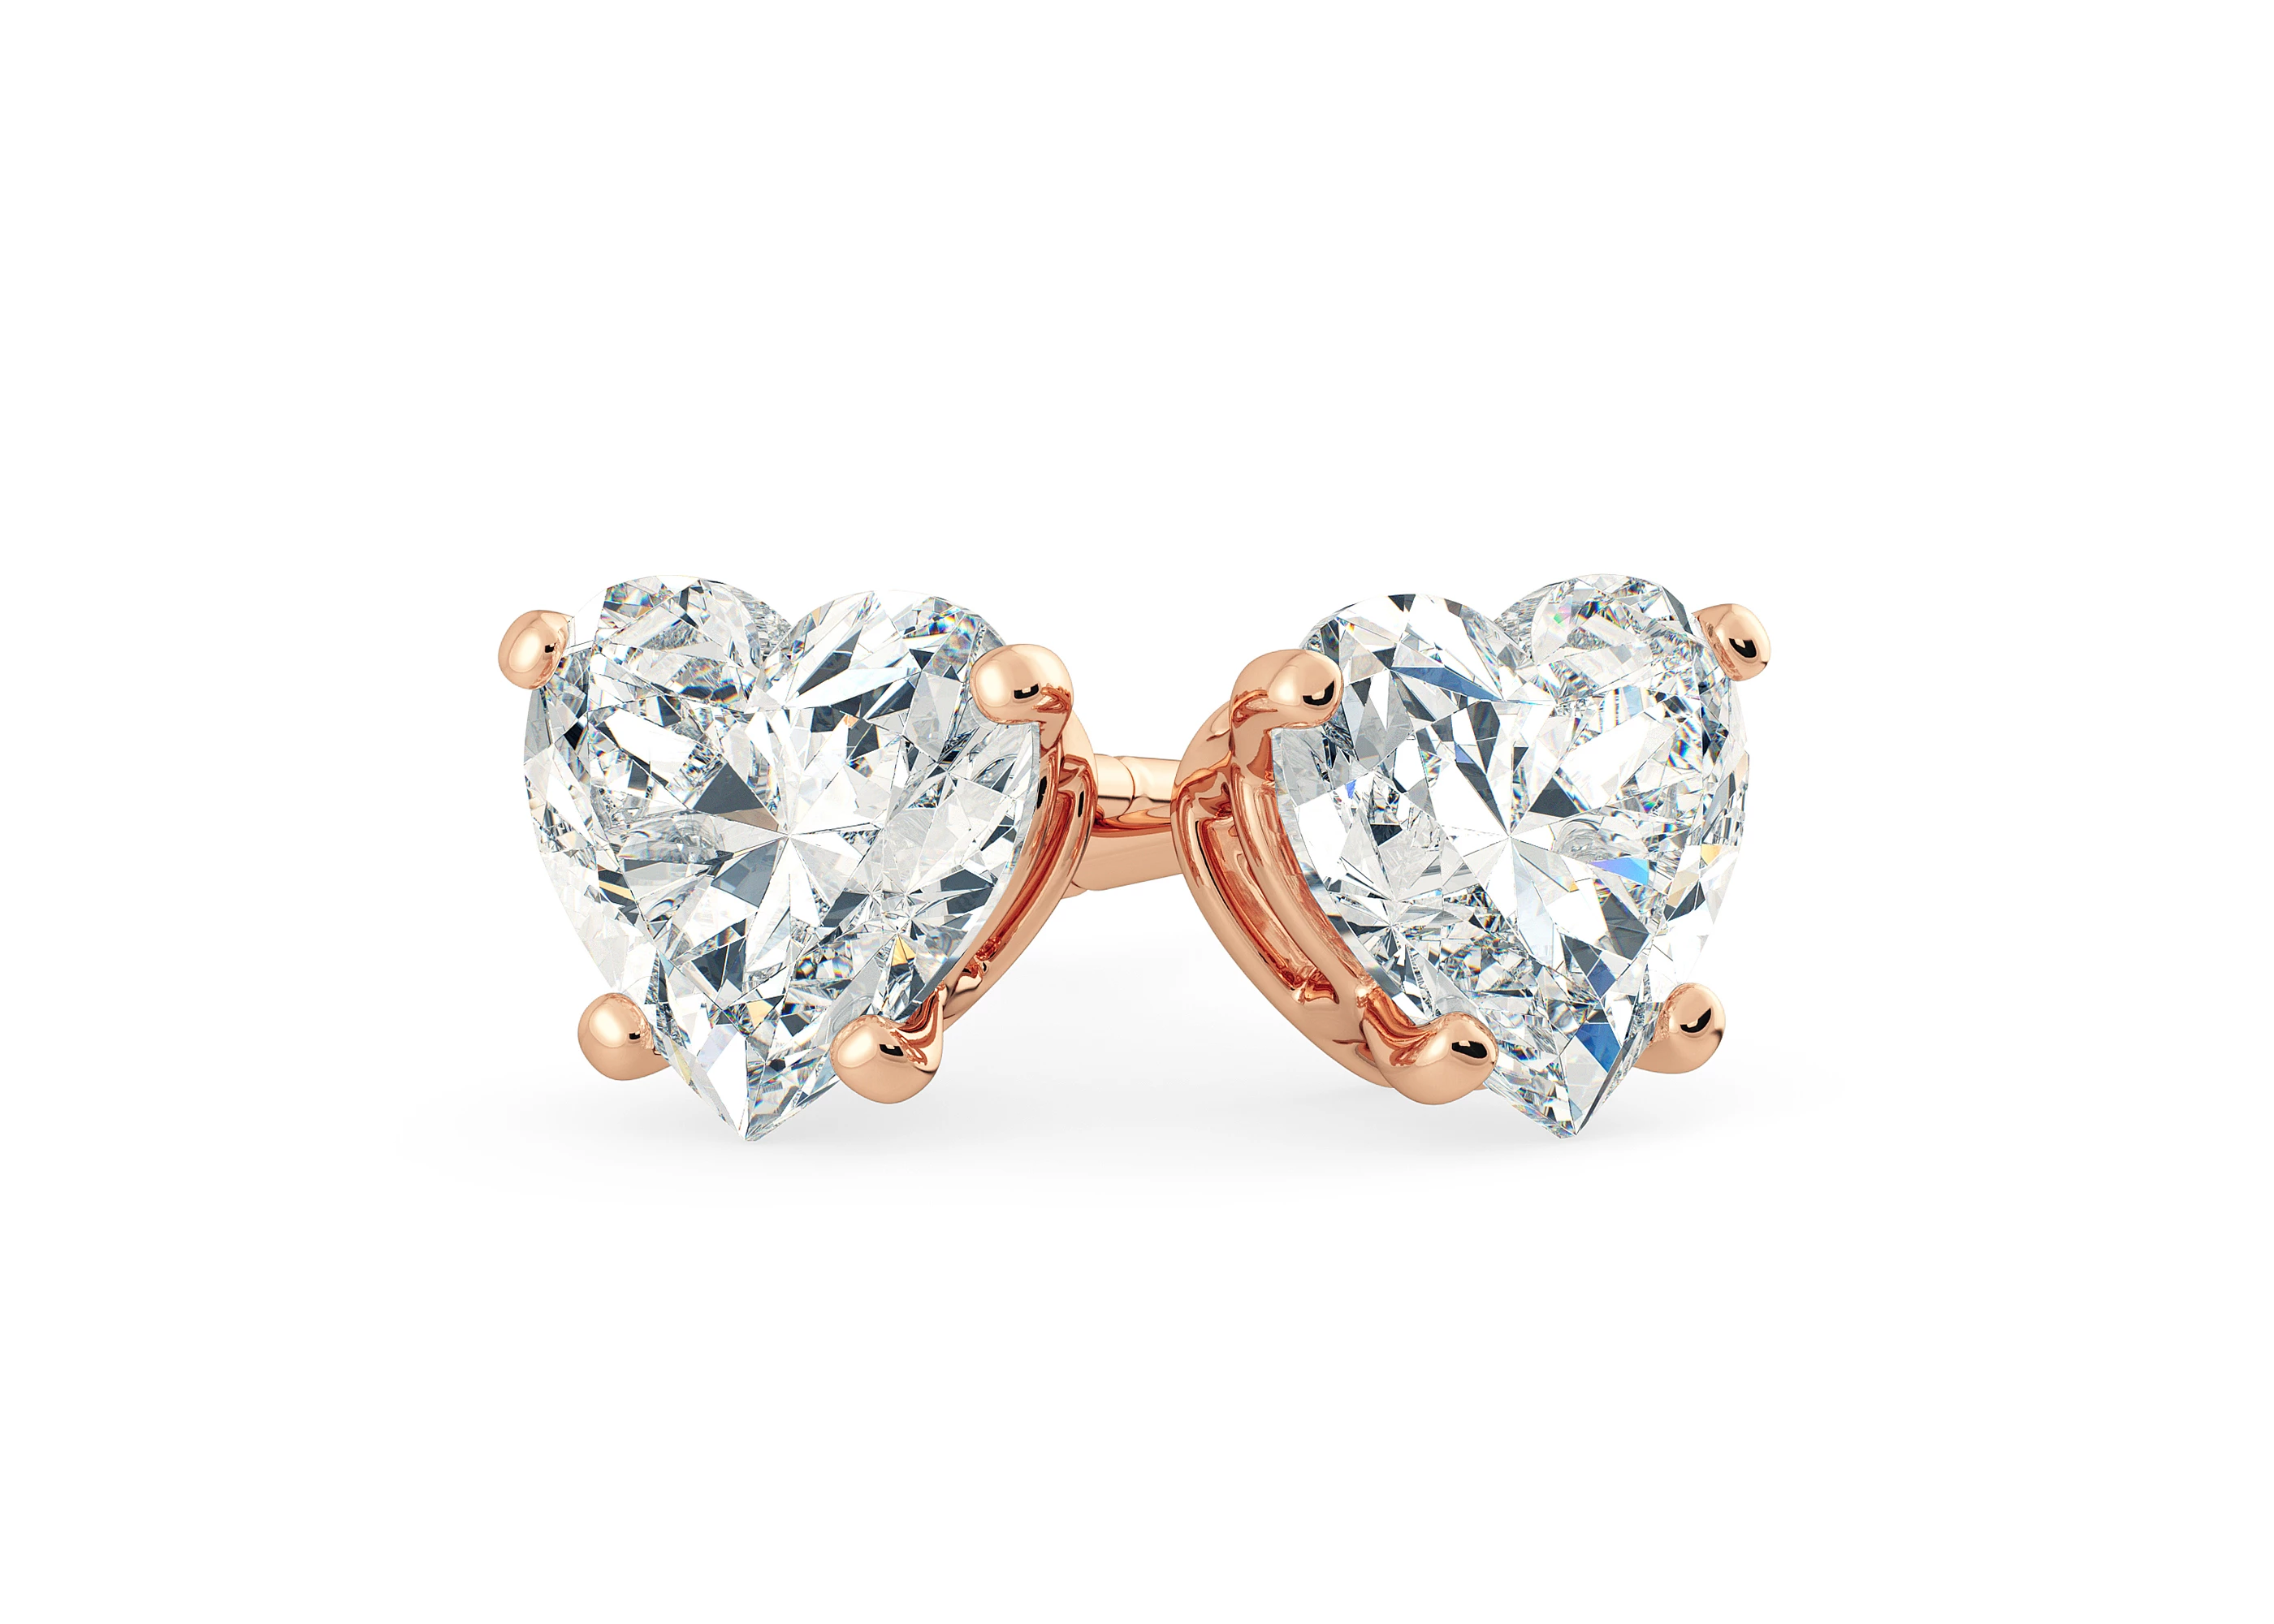 Ettore Heart Diamond Stud Earrings in 18K Rose Gold with Butterfly Backs